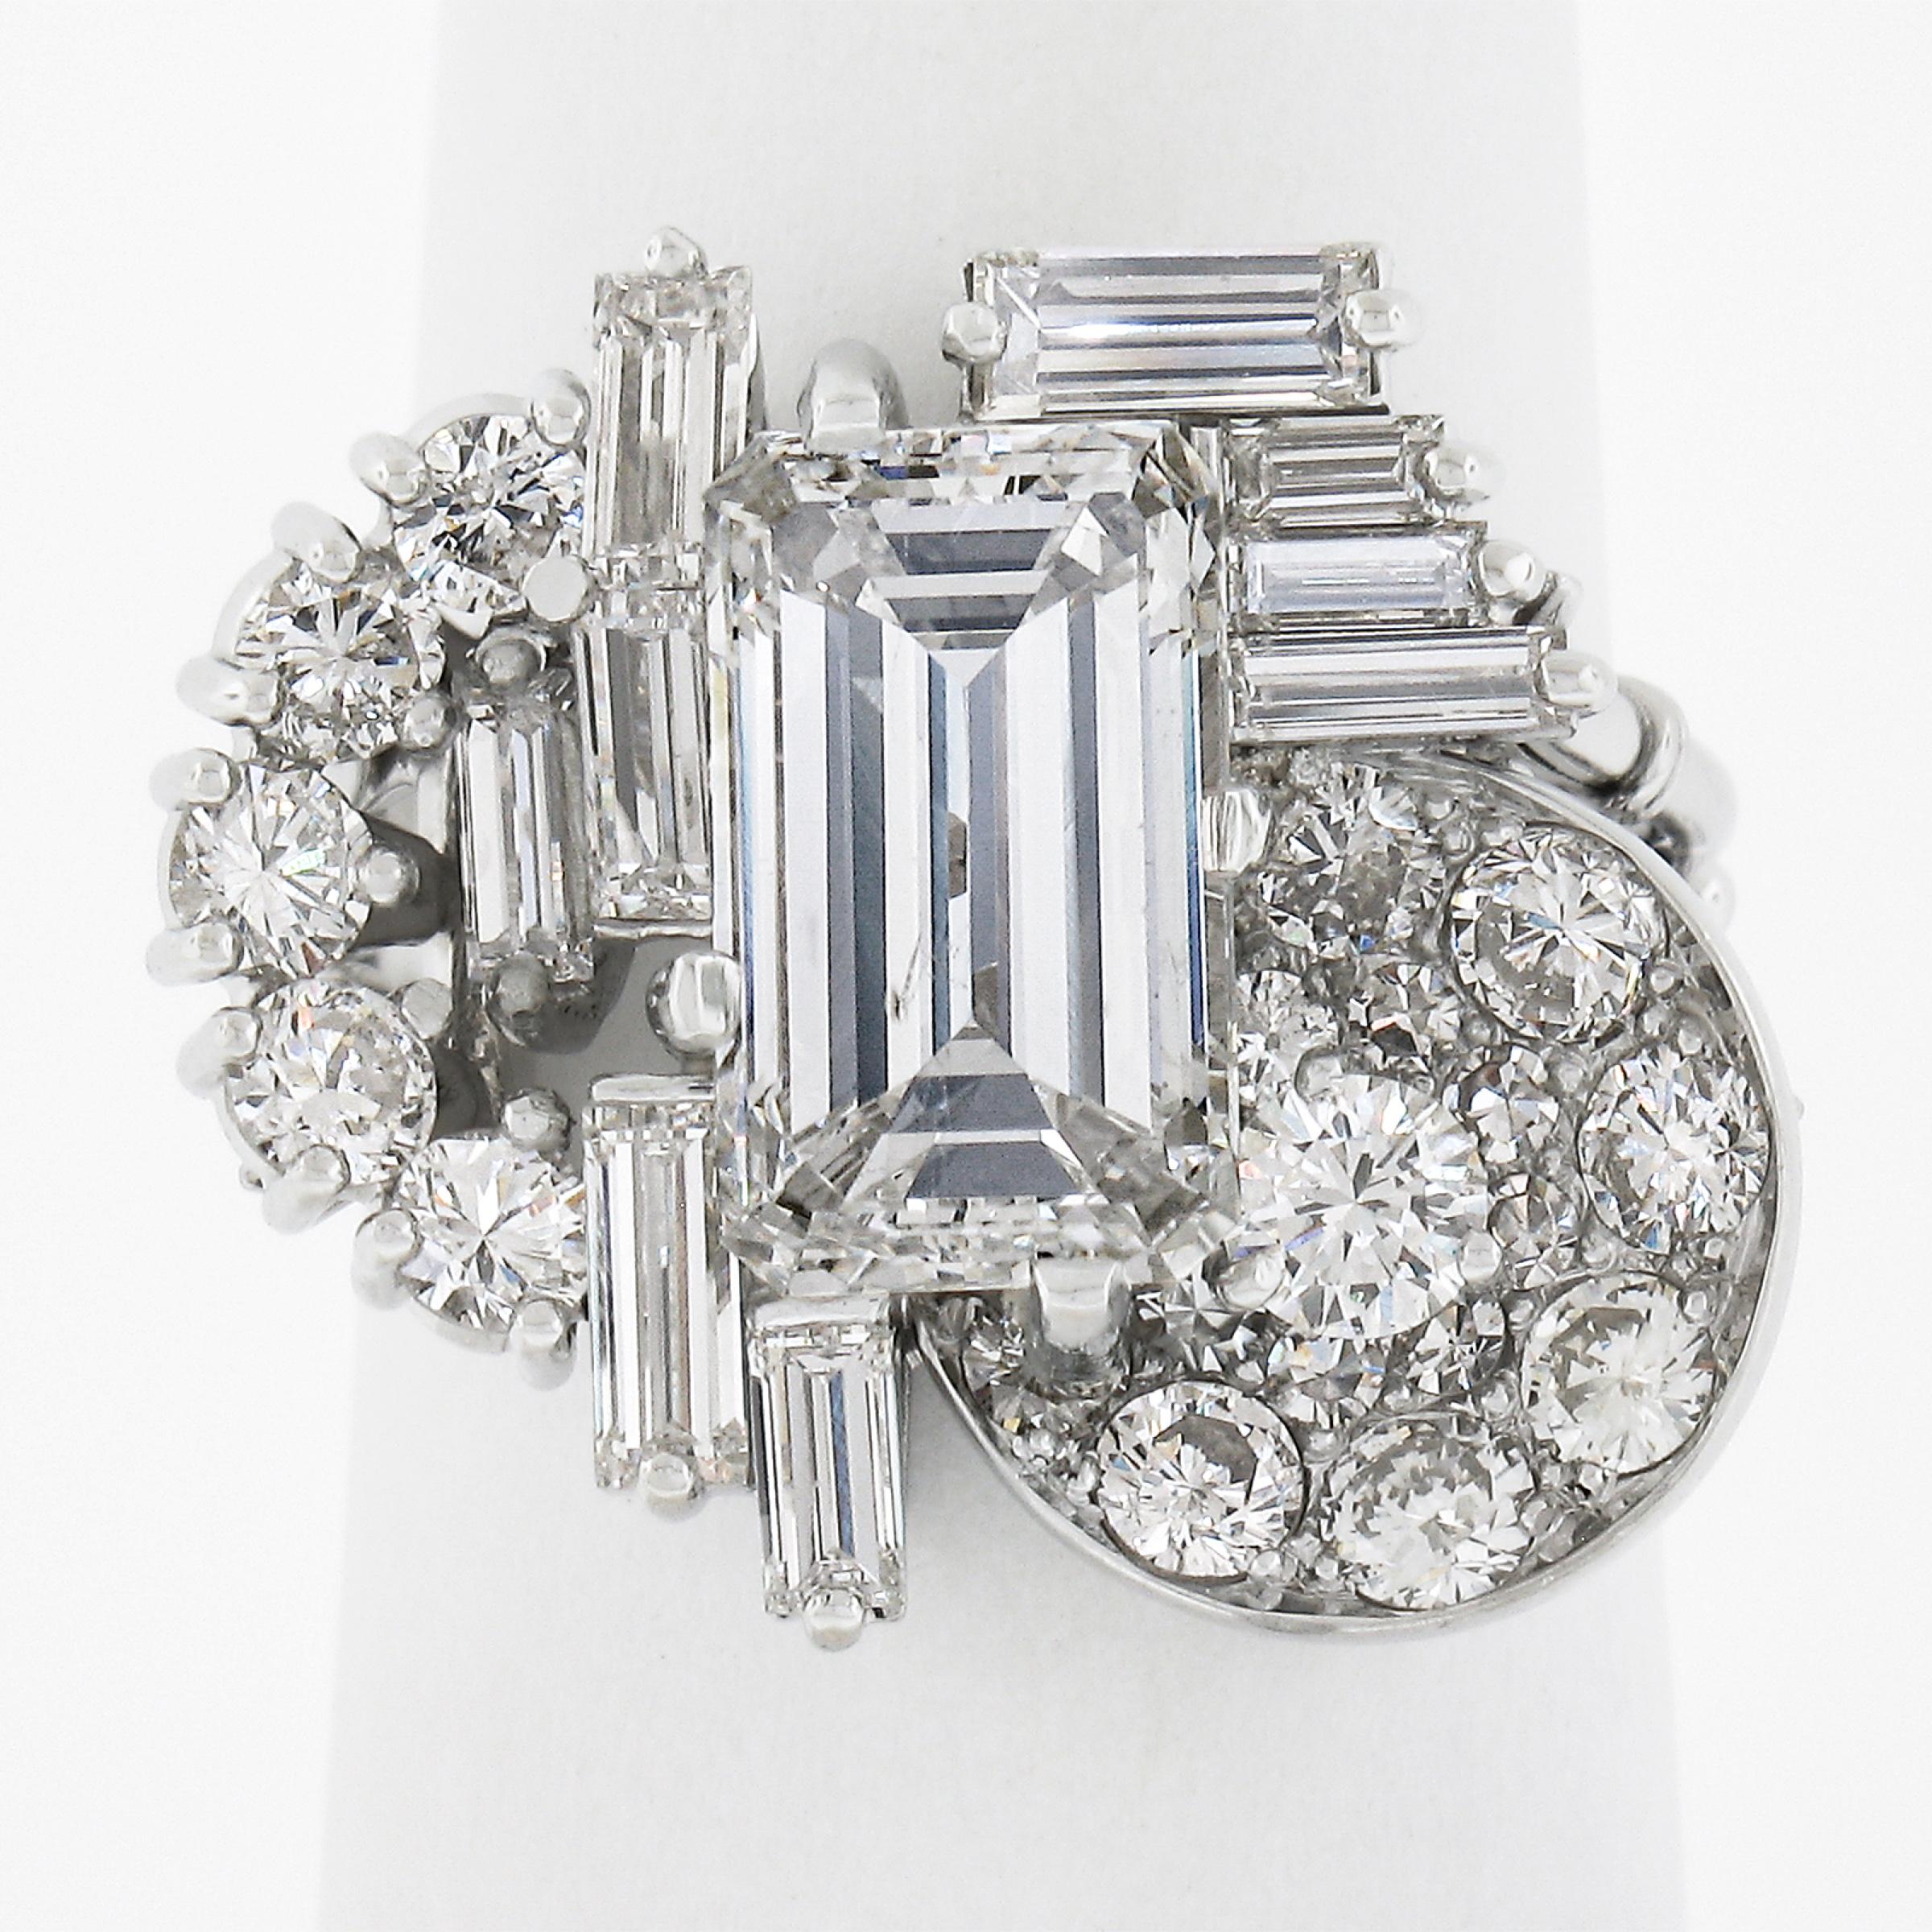 Dieser besonders glamouröse und ausgefallene Diamantring ist aus massivem Platin gefertigt und verfügt über einen großen Diamanten mit 3,0 Karat im Smaragdschliff in der Mitte des Designs. Er ist umgeben von Diamanten im Baguette- und Rundschliff